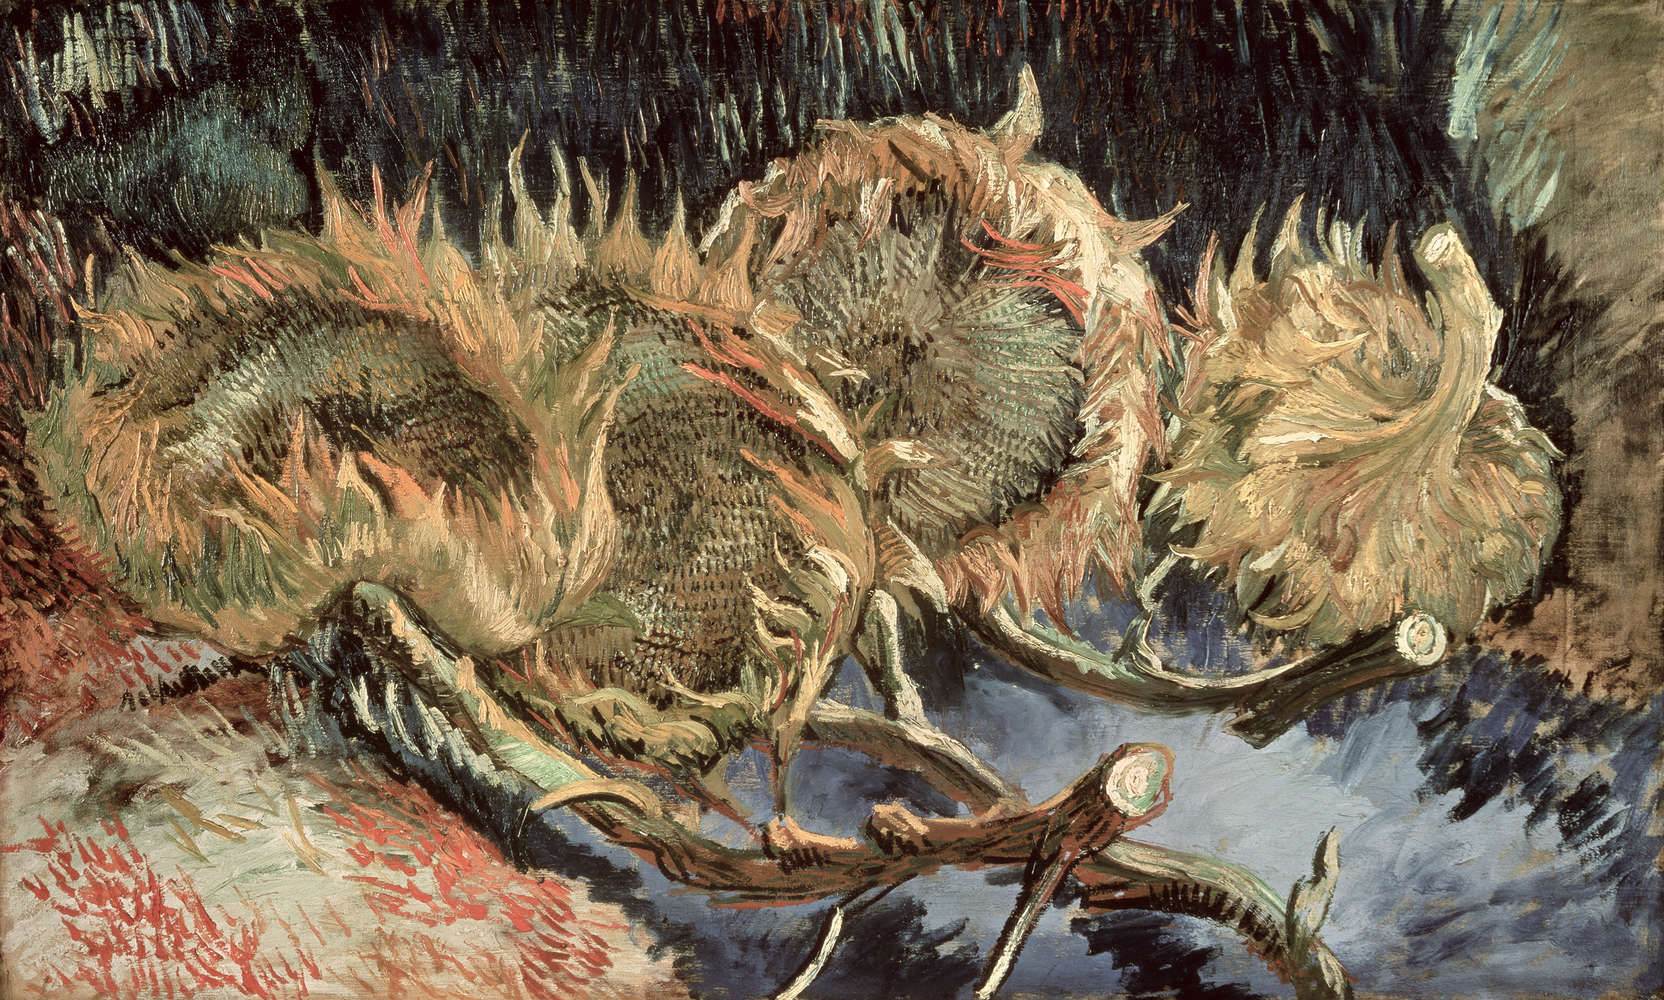             Mural "Cuatro girasoles marchitos" de Vincent van Gogh
        